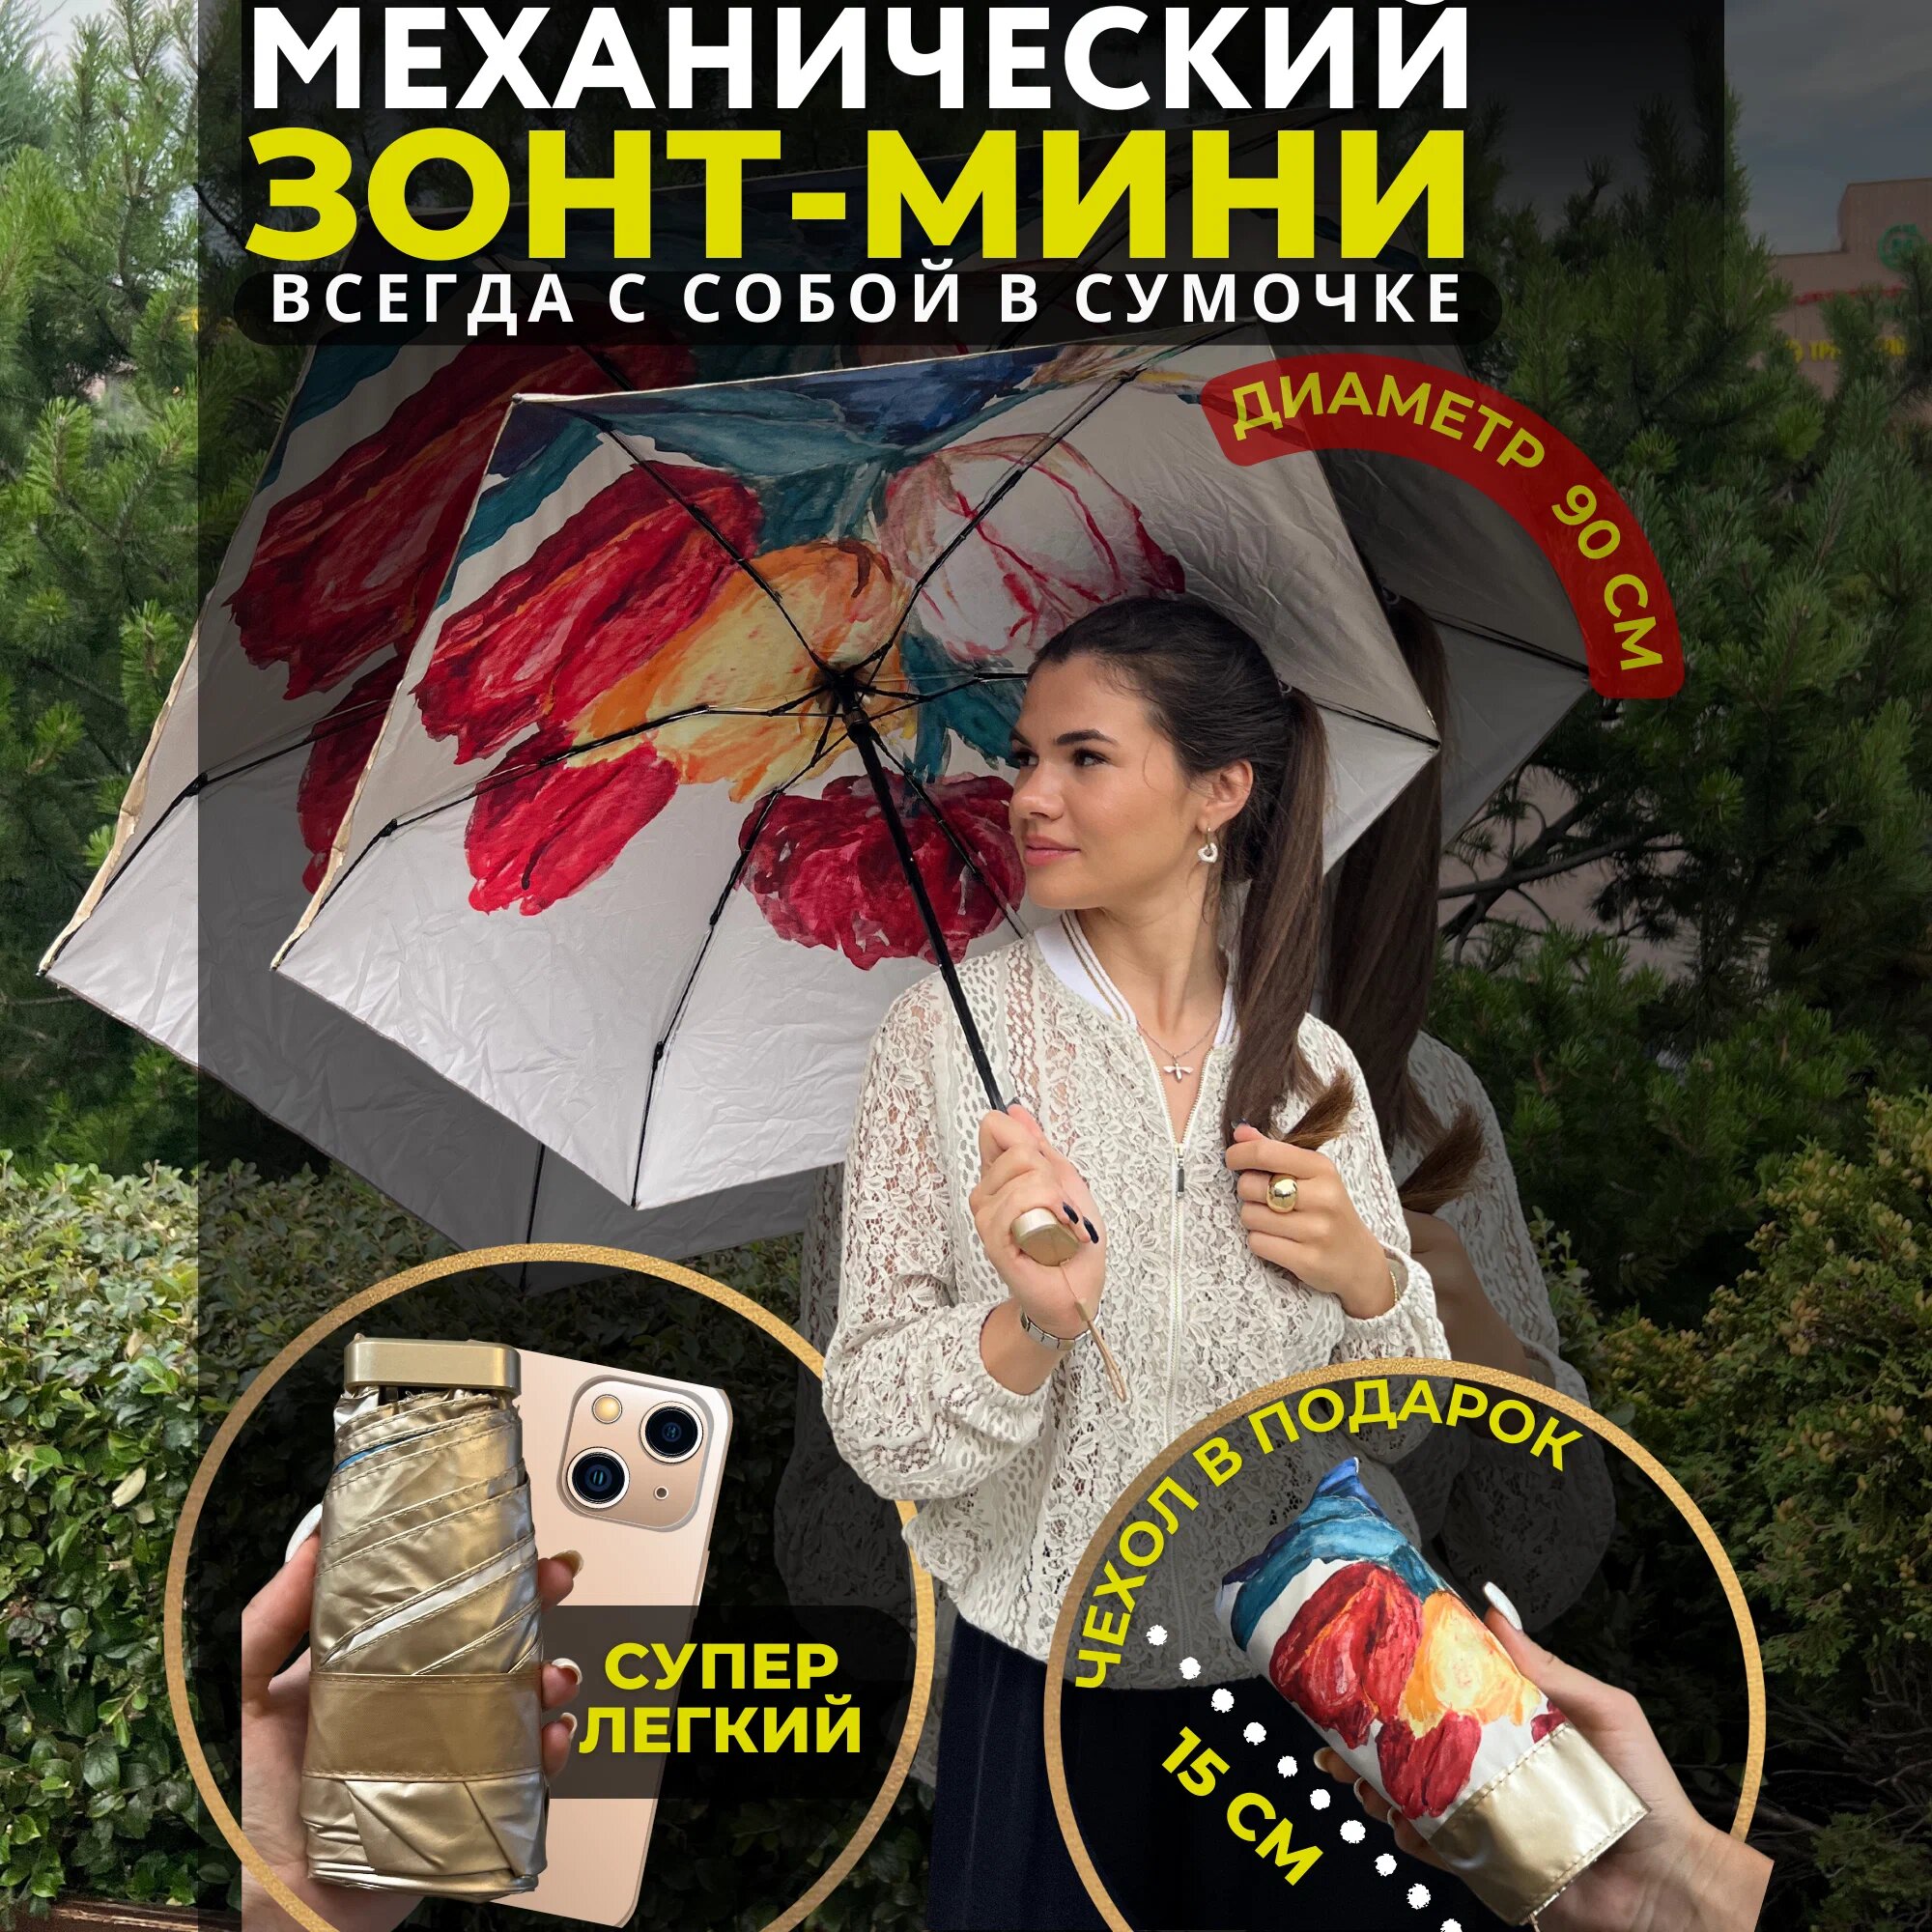 Мини-зонт